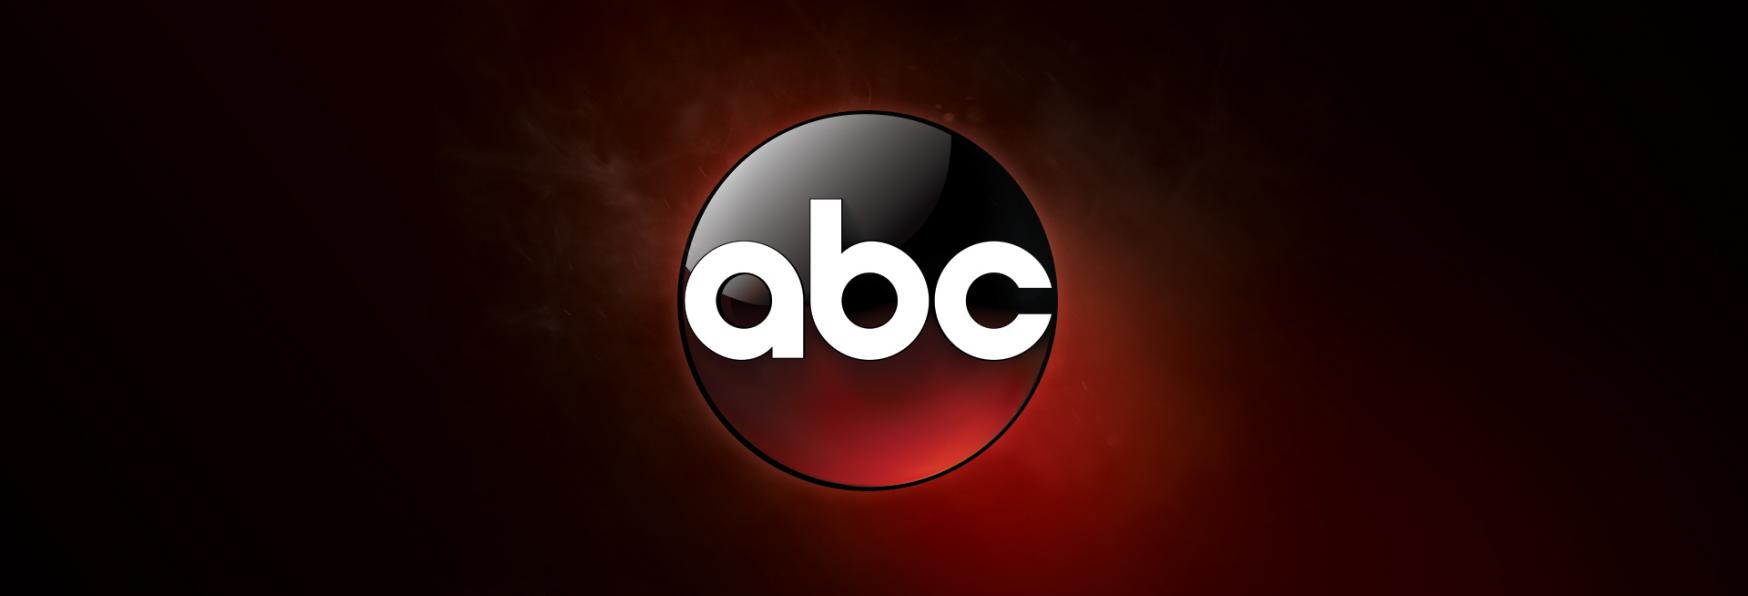 ABC ordina un nuovo Pilot per la Serie TV incentrata sul National Parks Investigative Services Branch